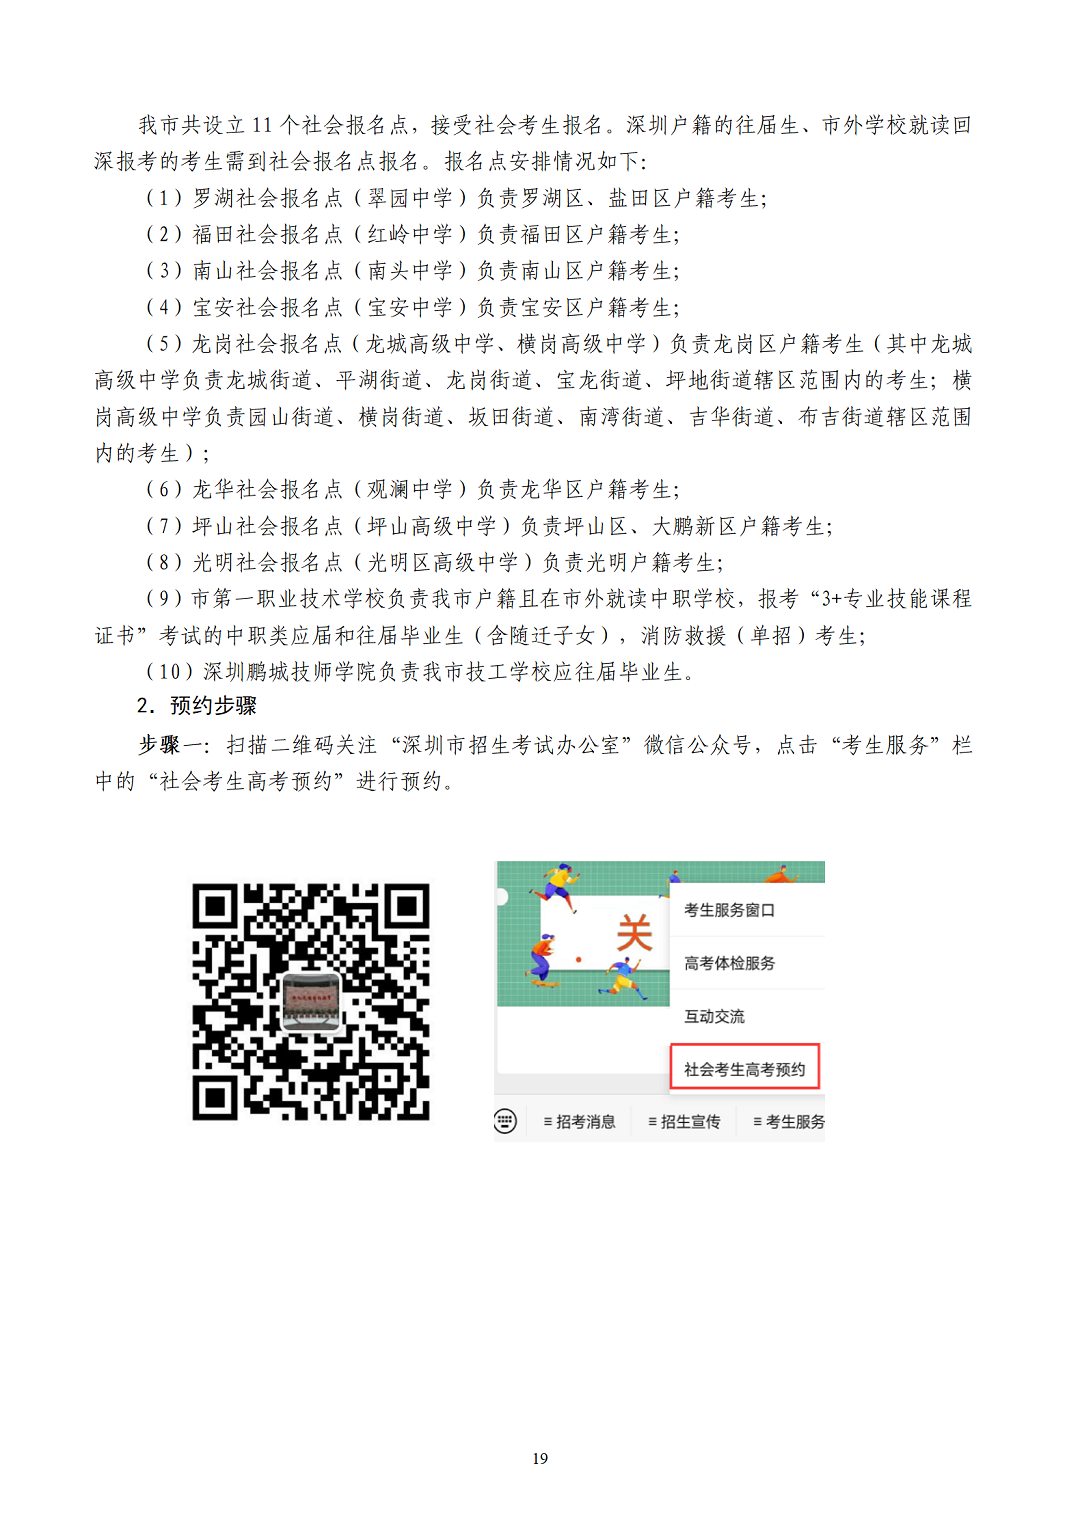 （有封面）2023年深圳高考报名手册v4.0-1024-A4版本-最终_21.png